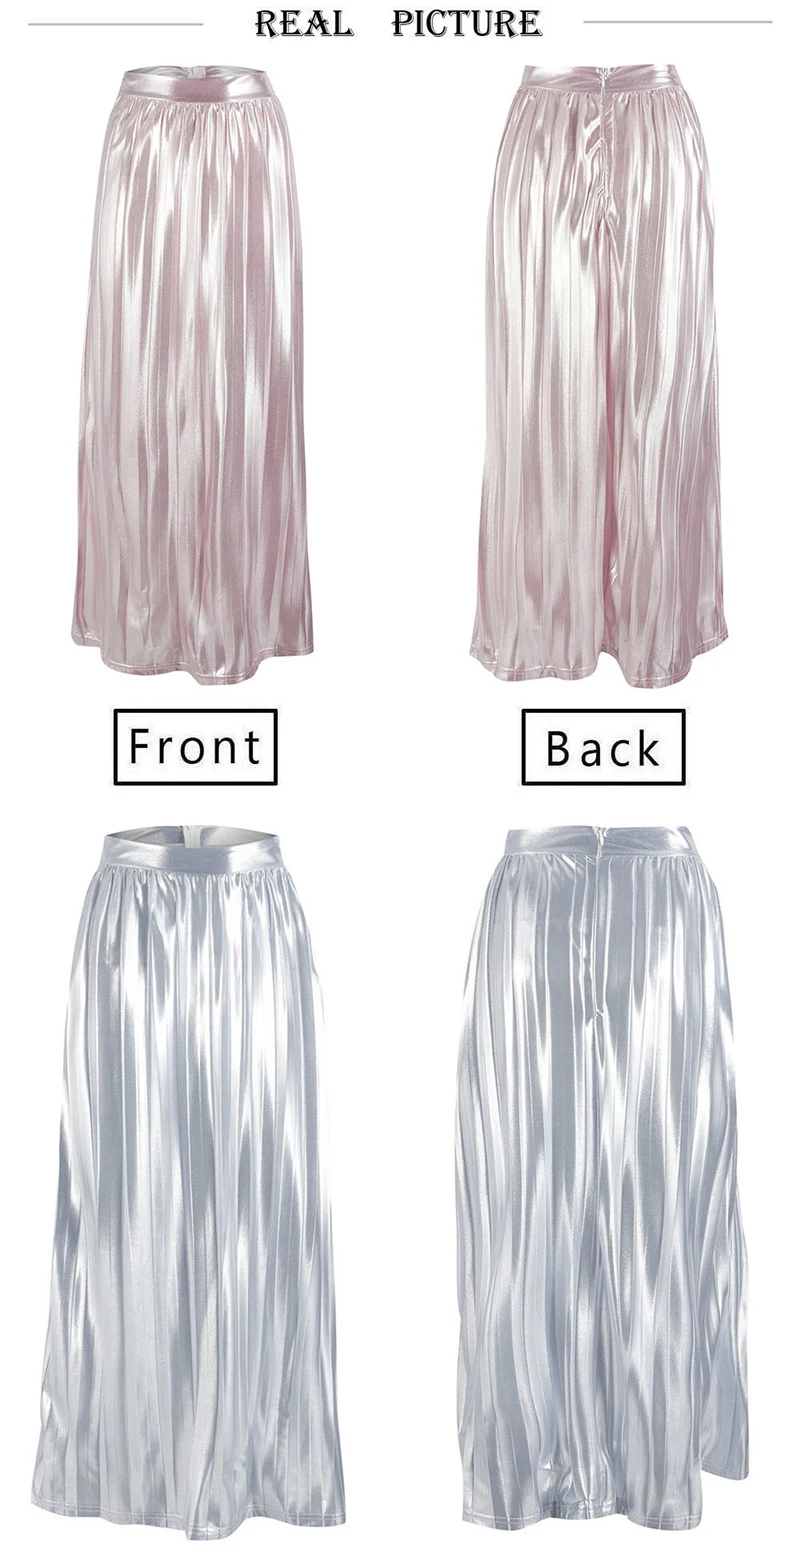 GUMPRUN Faldas Mujer Moda, летние юбки для женщин, s, сексуальная юбка миди с пайетками, Женская юбка, плюс размер, розовая плиссированная юбка